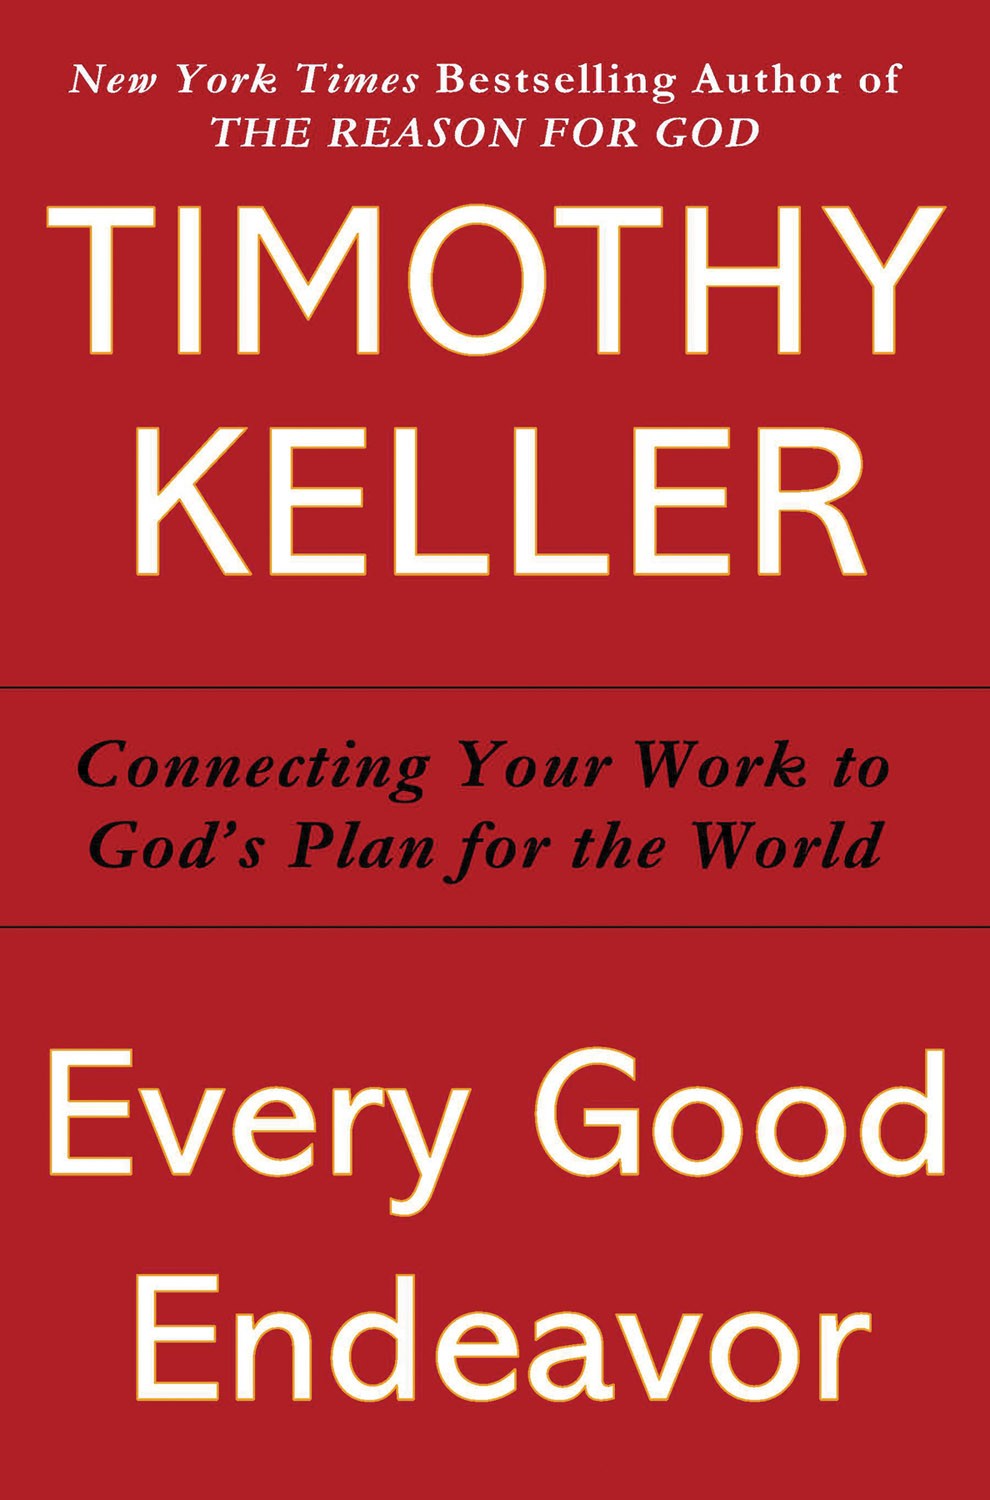 Every Good Endeavor by Tim Keller